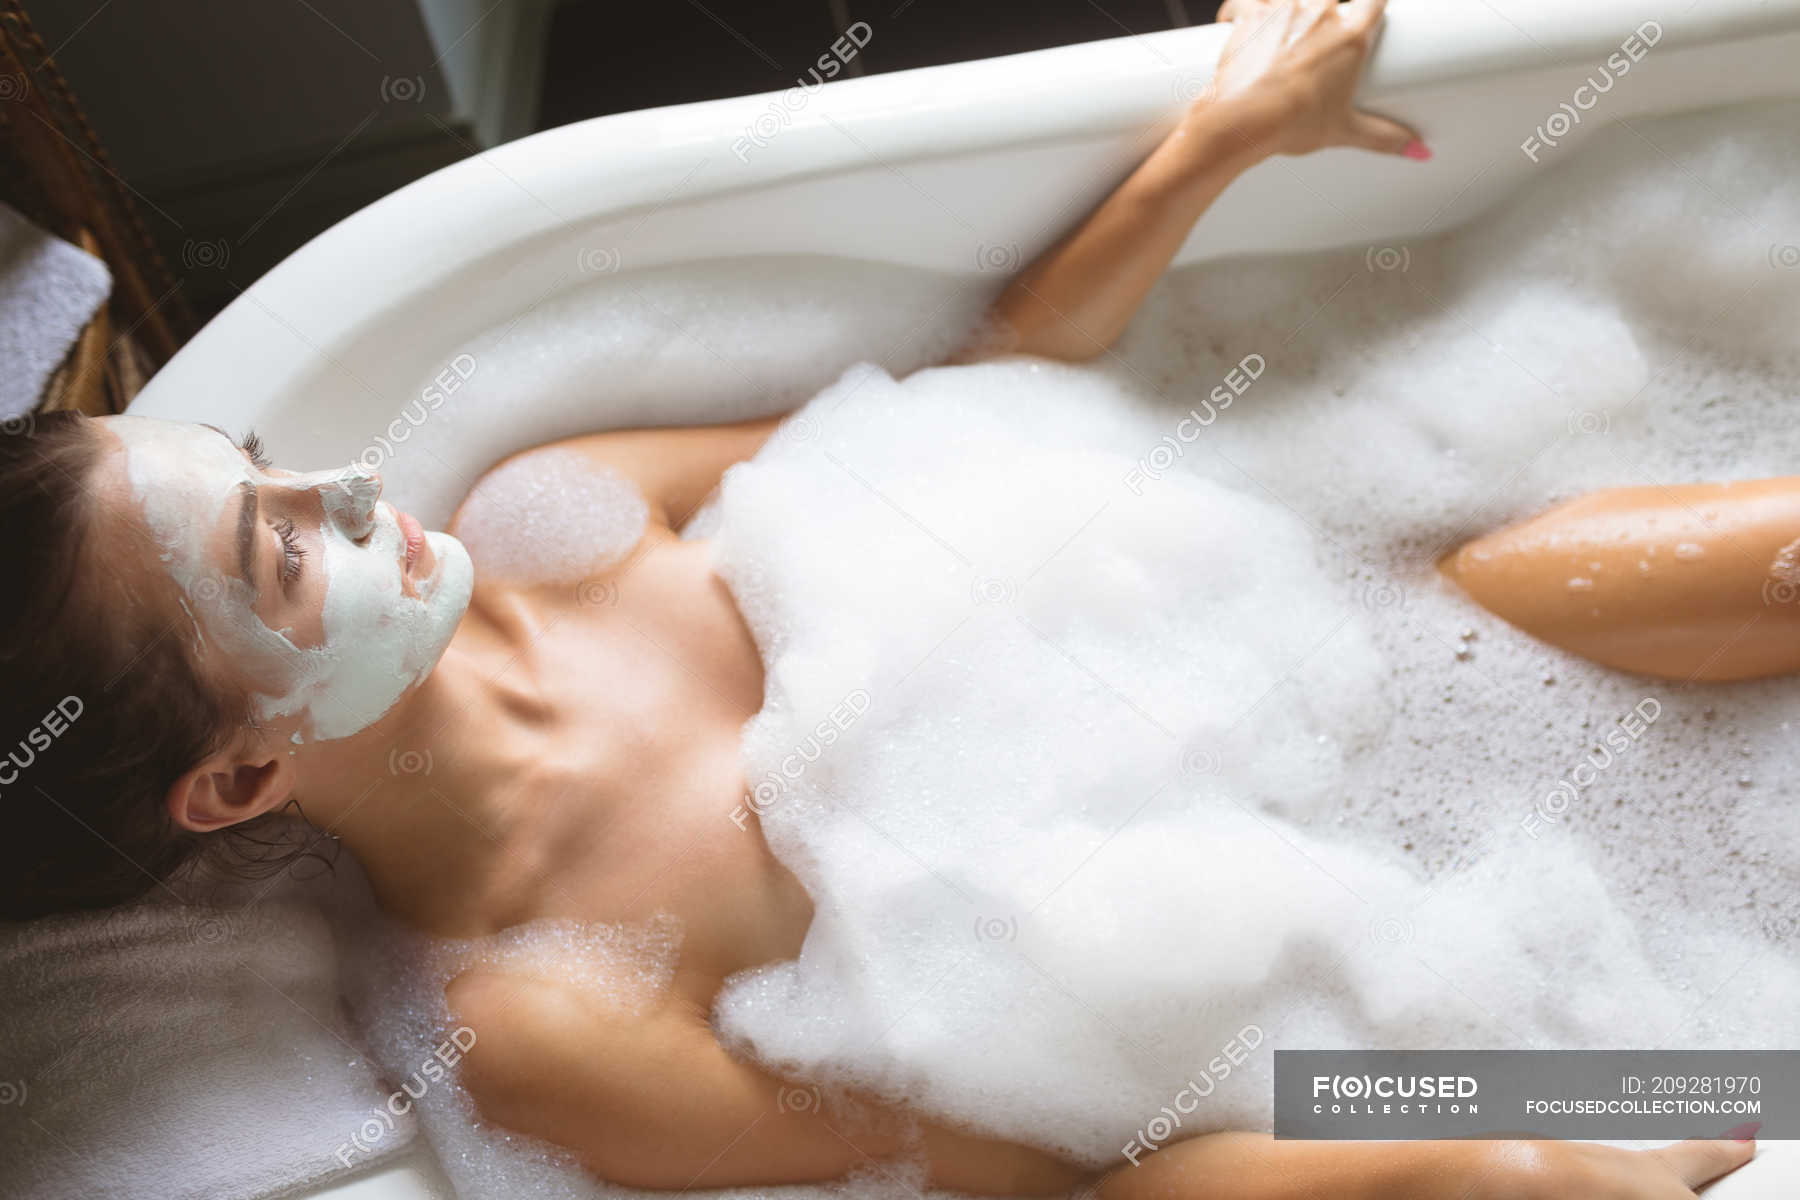 Обаятельная девушка валяется на большой кровати и моется в ванне